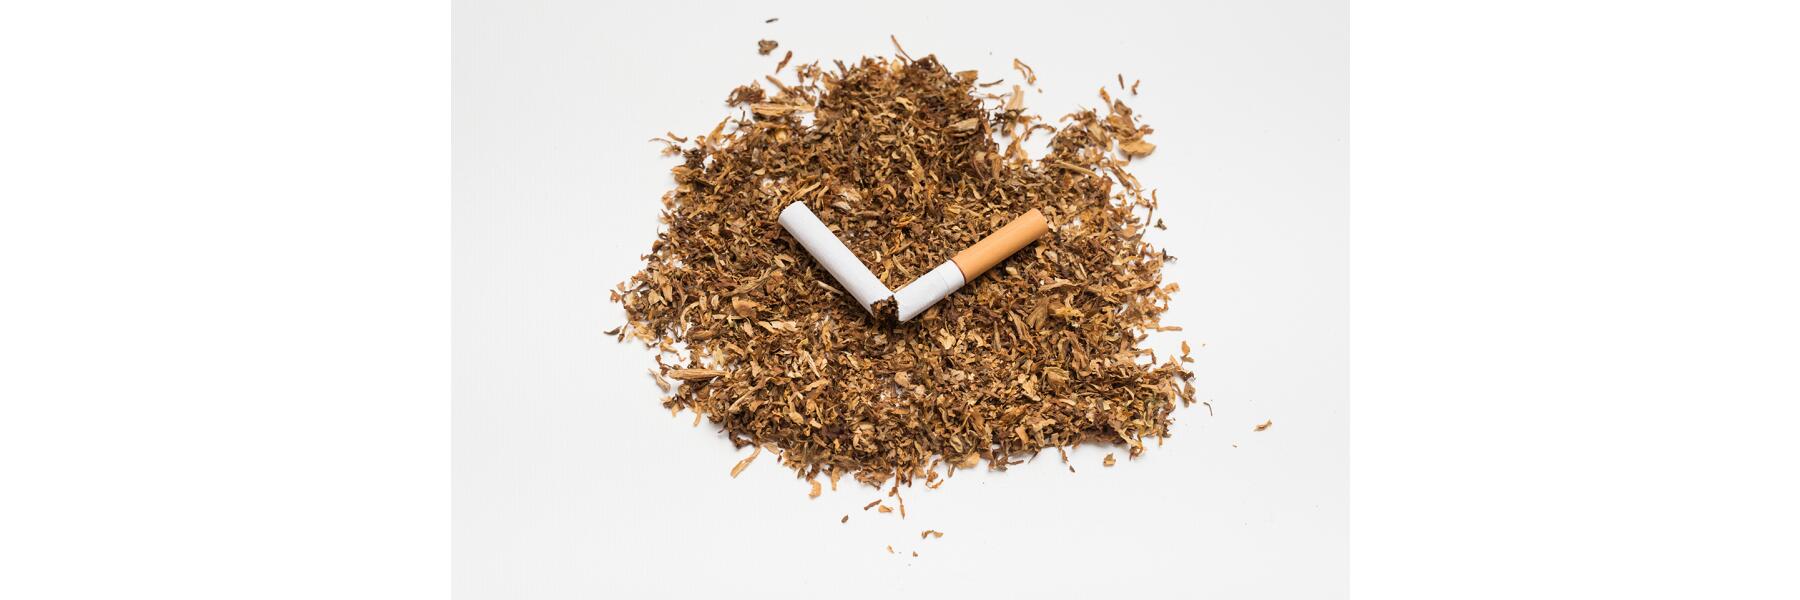 Die Tabakindustrie und die E-Zigarette